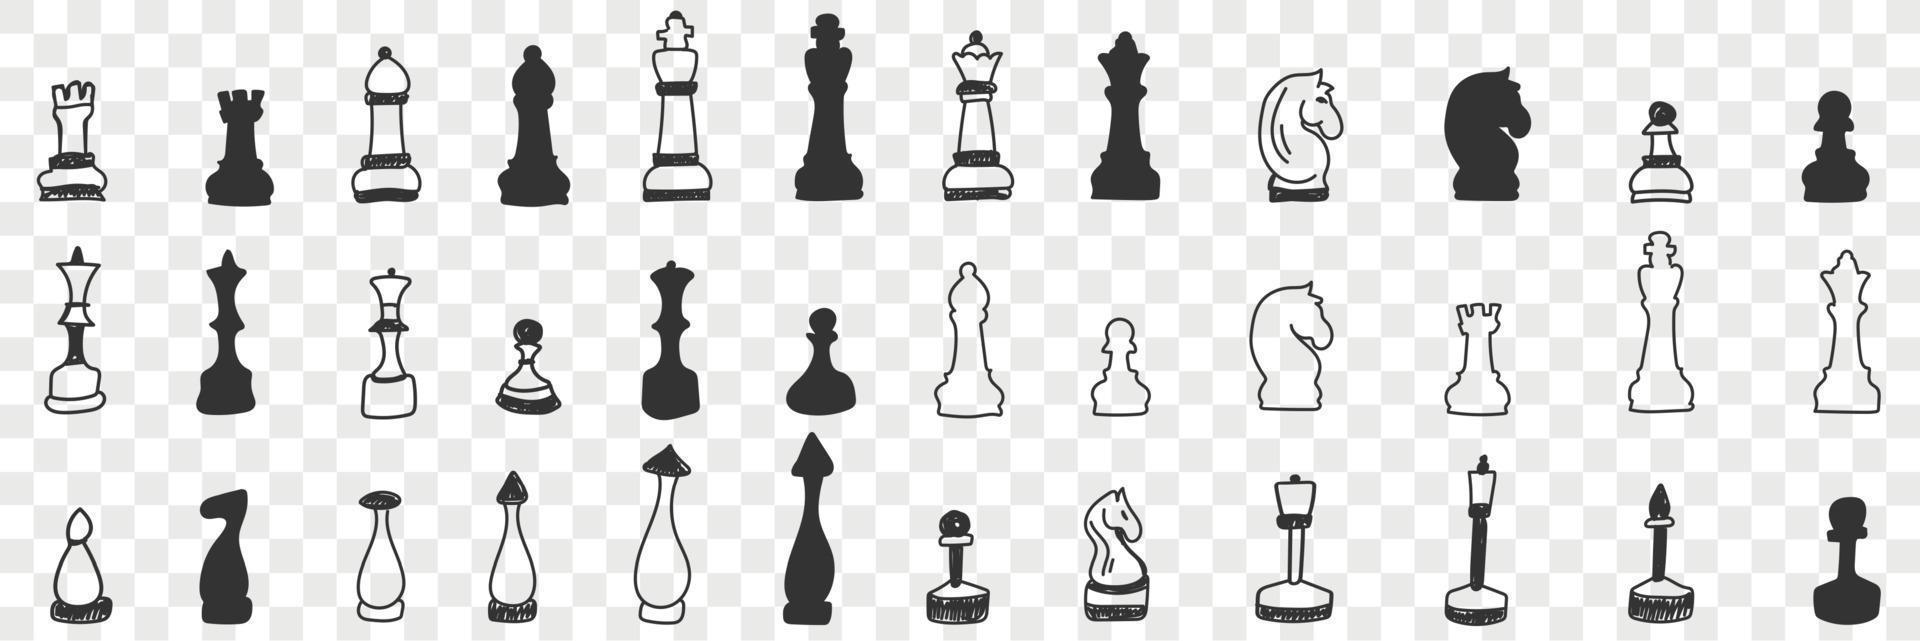 scacchi su tavola scarabocchio impostare. collezione di mano disegnato vario scacchi per giocando gioco bianca e nero su tavola per scacchi isolato su trasparente sfondo vettore